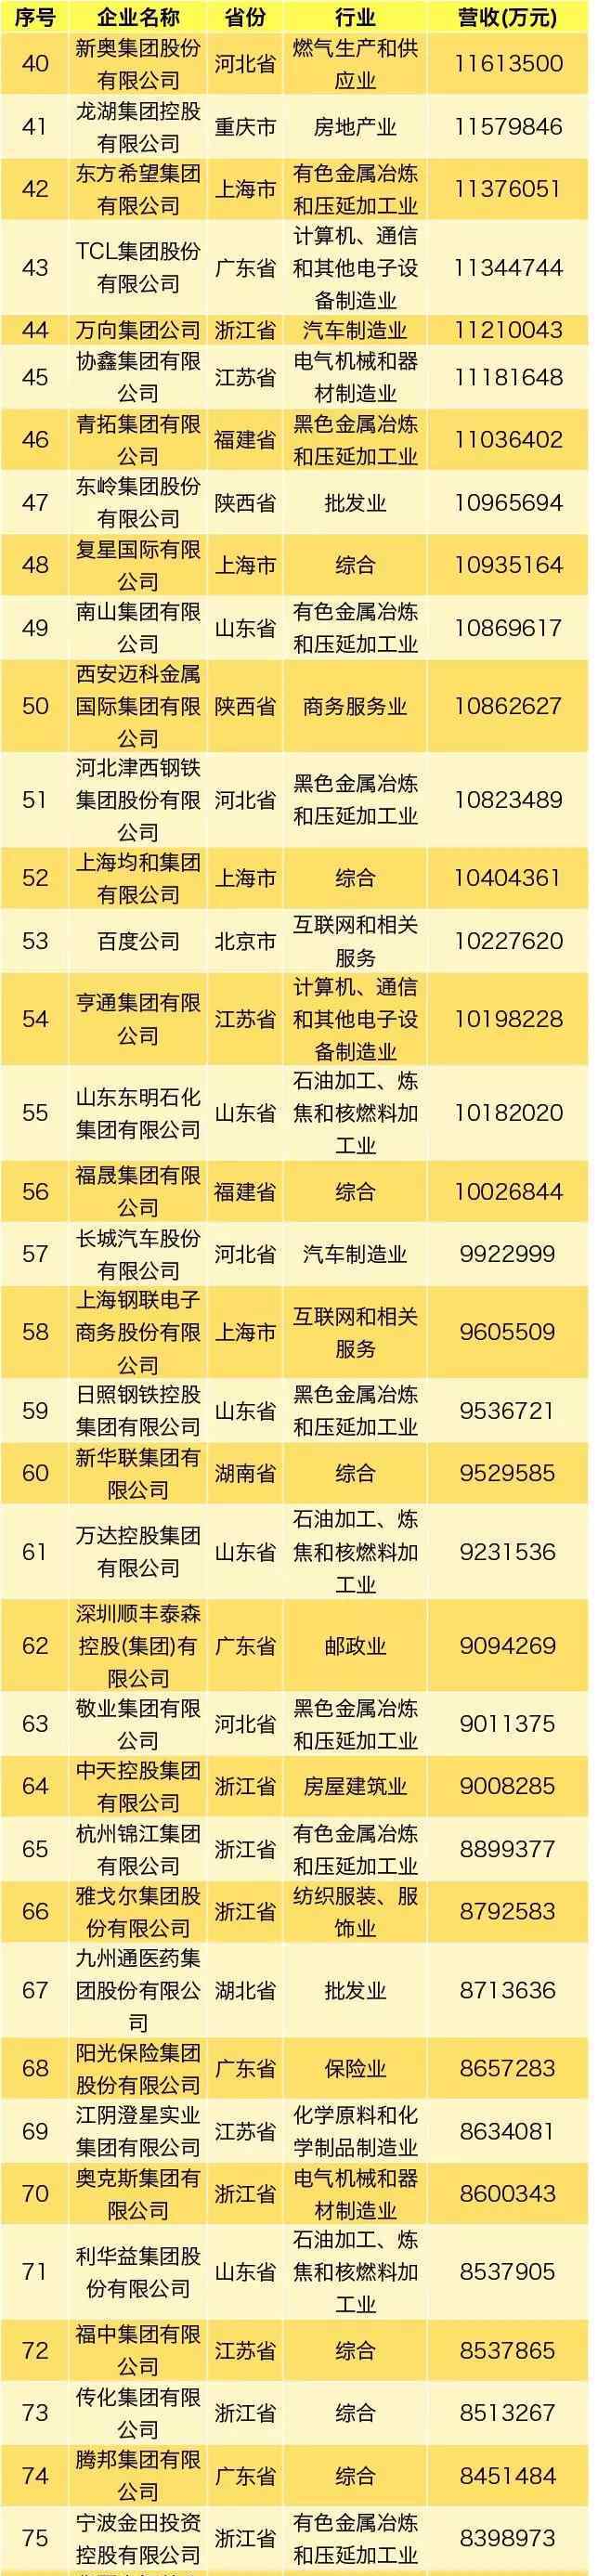 中国民营企业500强名单 2019中国民营企业500强榜单出炉，永辉位列第93位